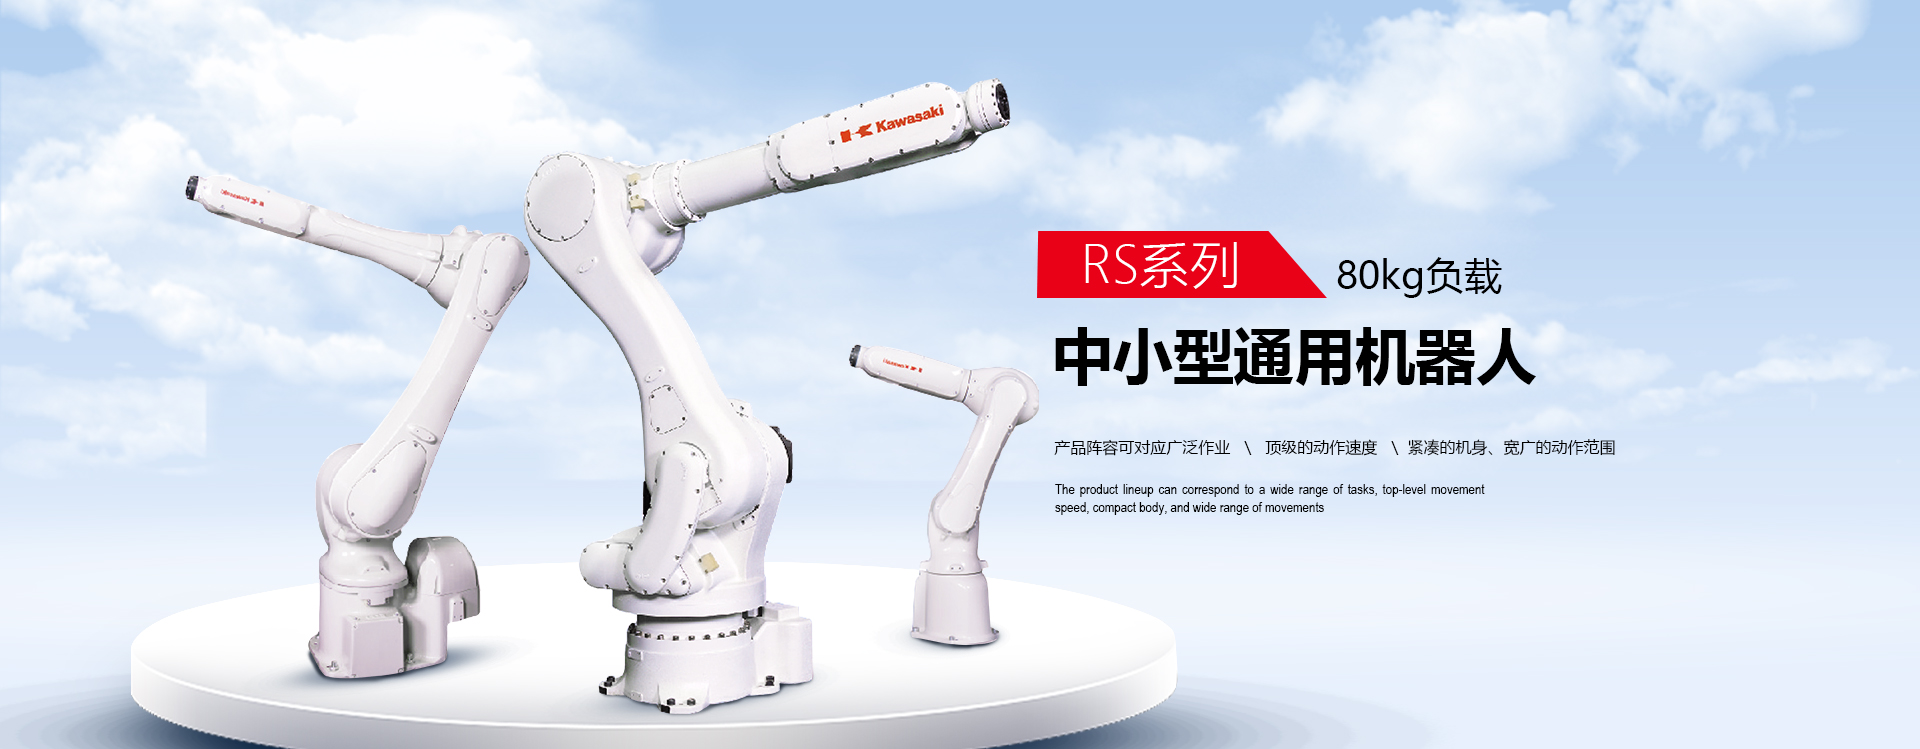 日本川崎机器人,松下机器人厂家,自动焊接机器人,自动化机器人